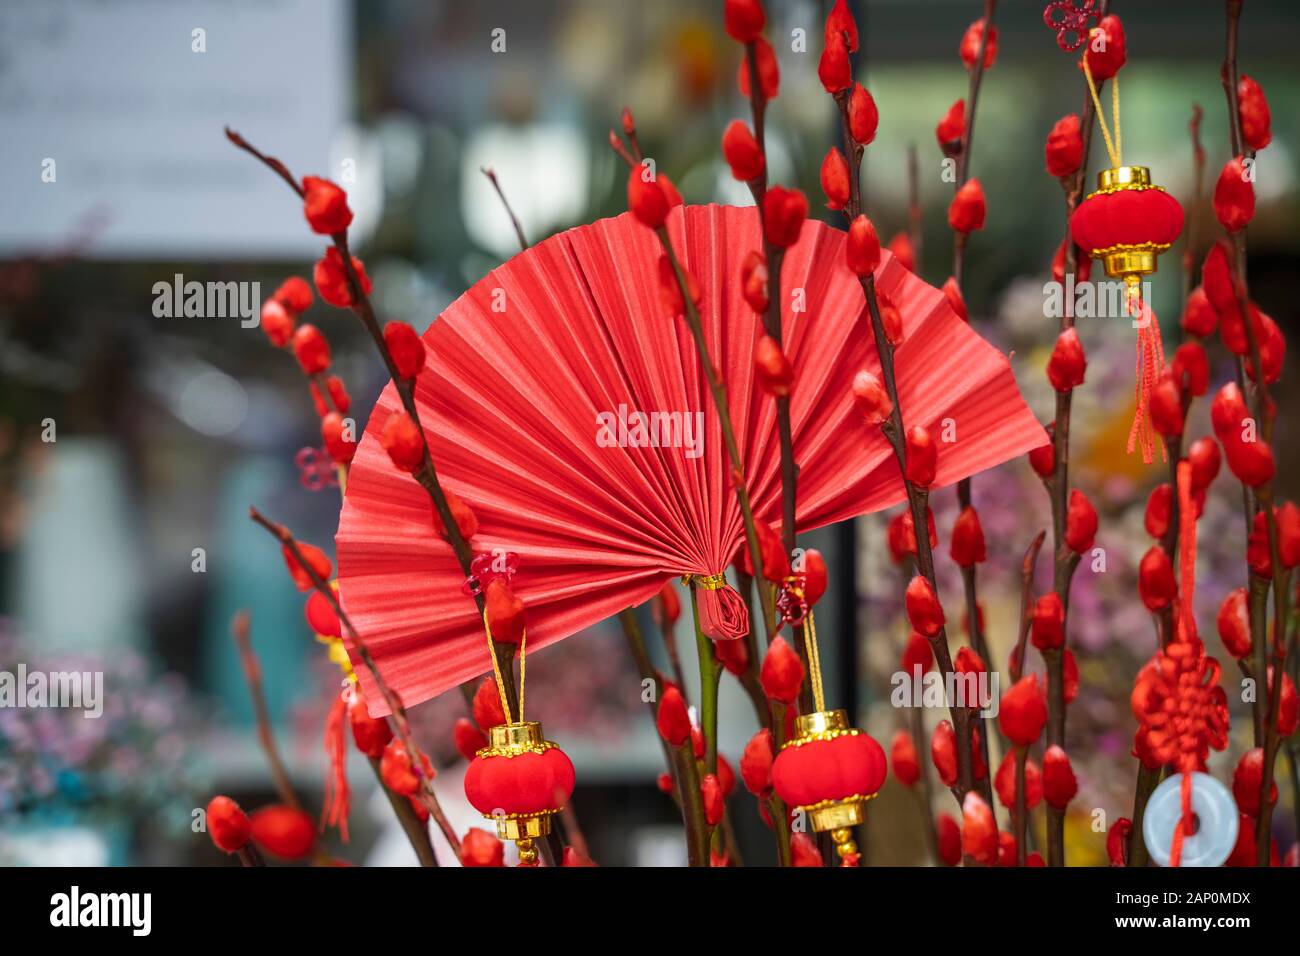 Ventilateur et de tradition lanterne chinoise dire meilleurs voeux et bonne chance pour la nouvelle année Banque D'Images